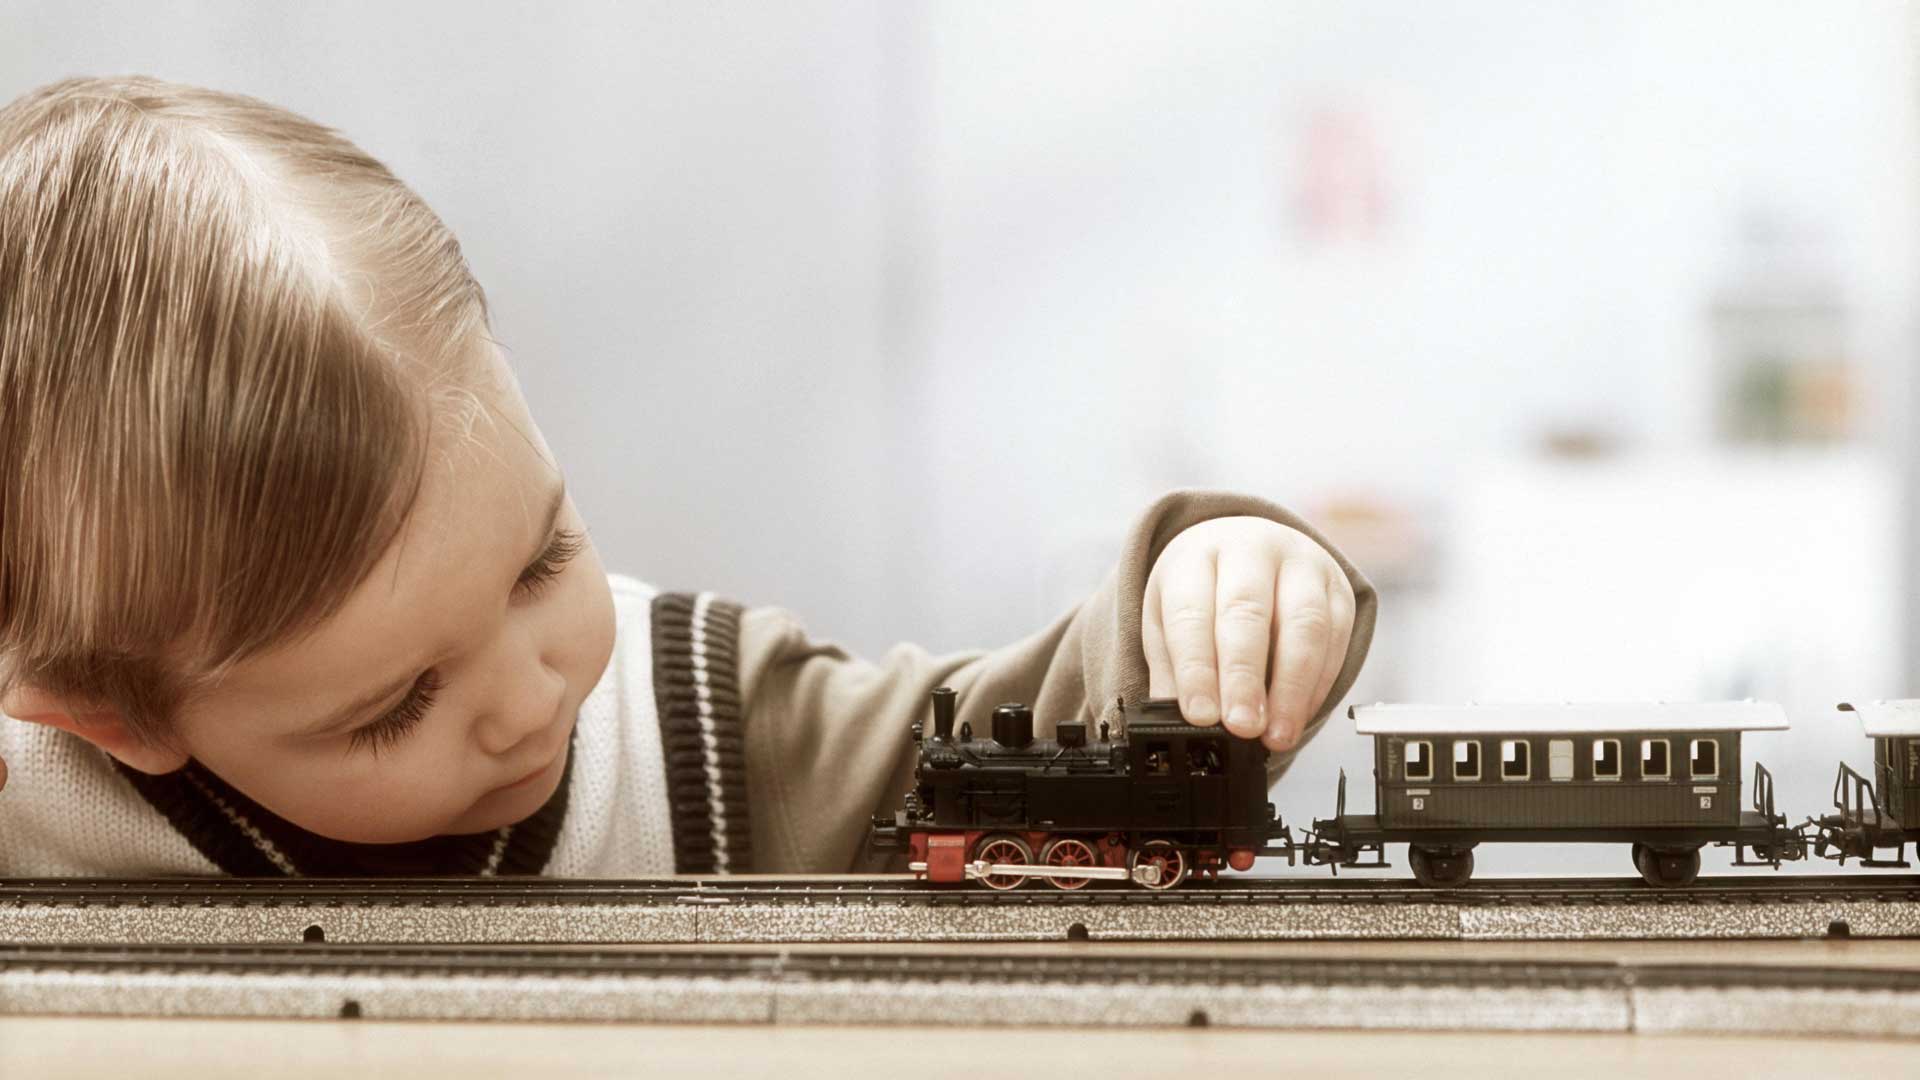 Das alte Foto zeigt einen kleinen Jungen, der mit dem Finger eine Modelleisenbahn berührt.